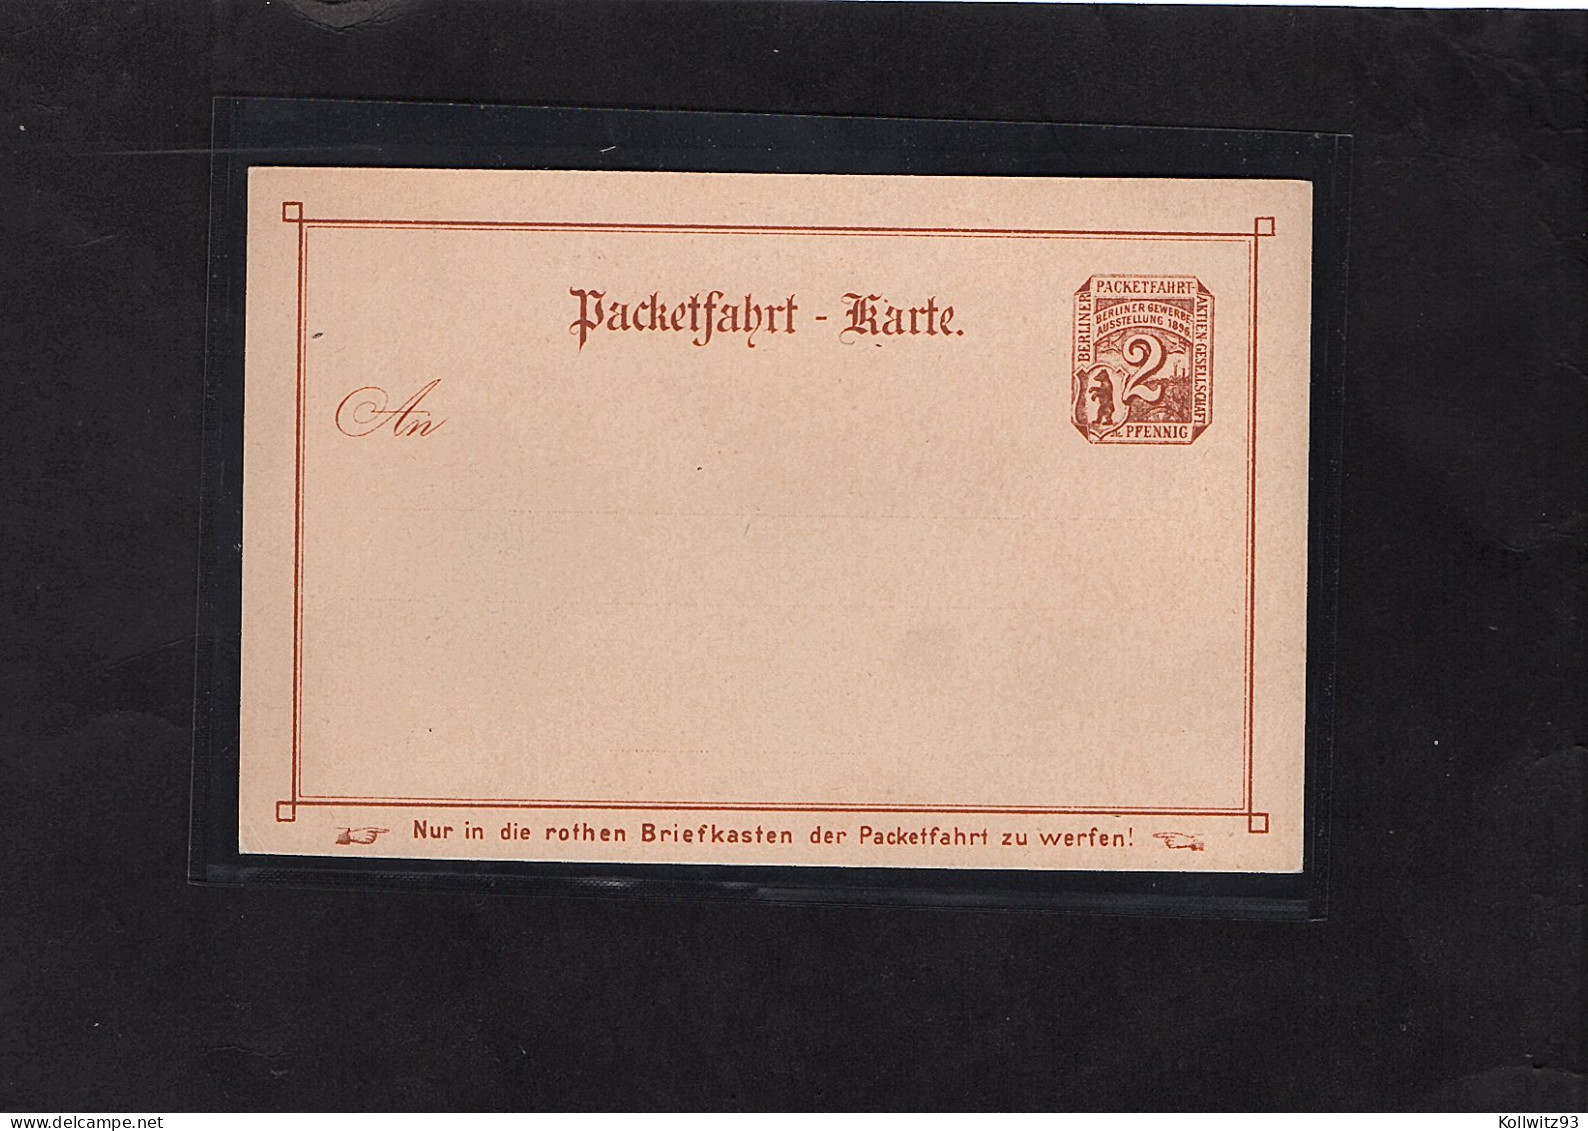 Privatpost, GS. 2 Pfg. Braun, Berliner Gewerbe Ausstellung 1896 Ungebraucht - Private & Lokale Post